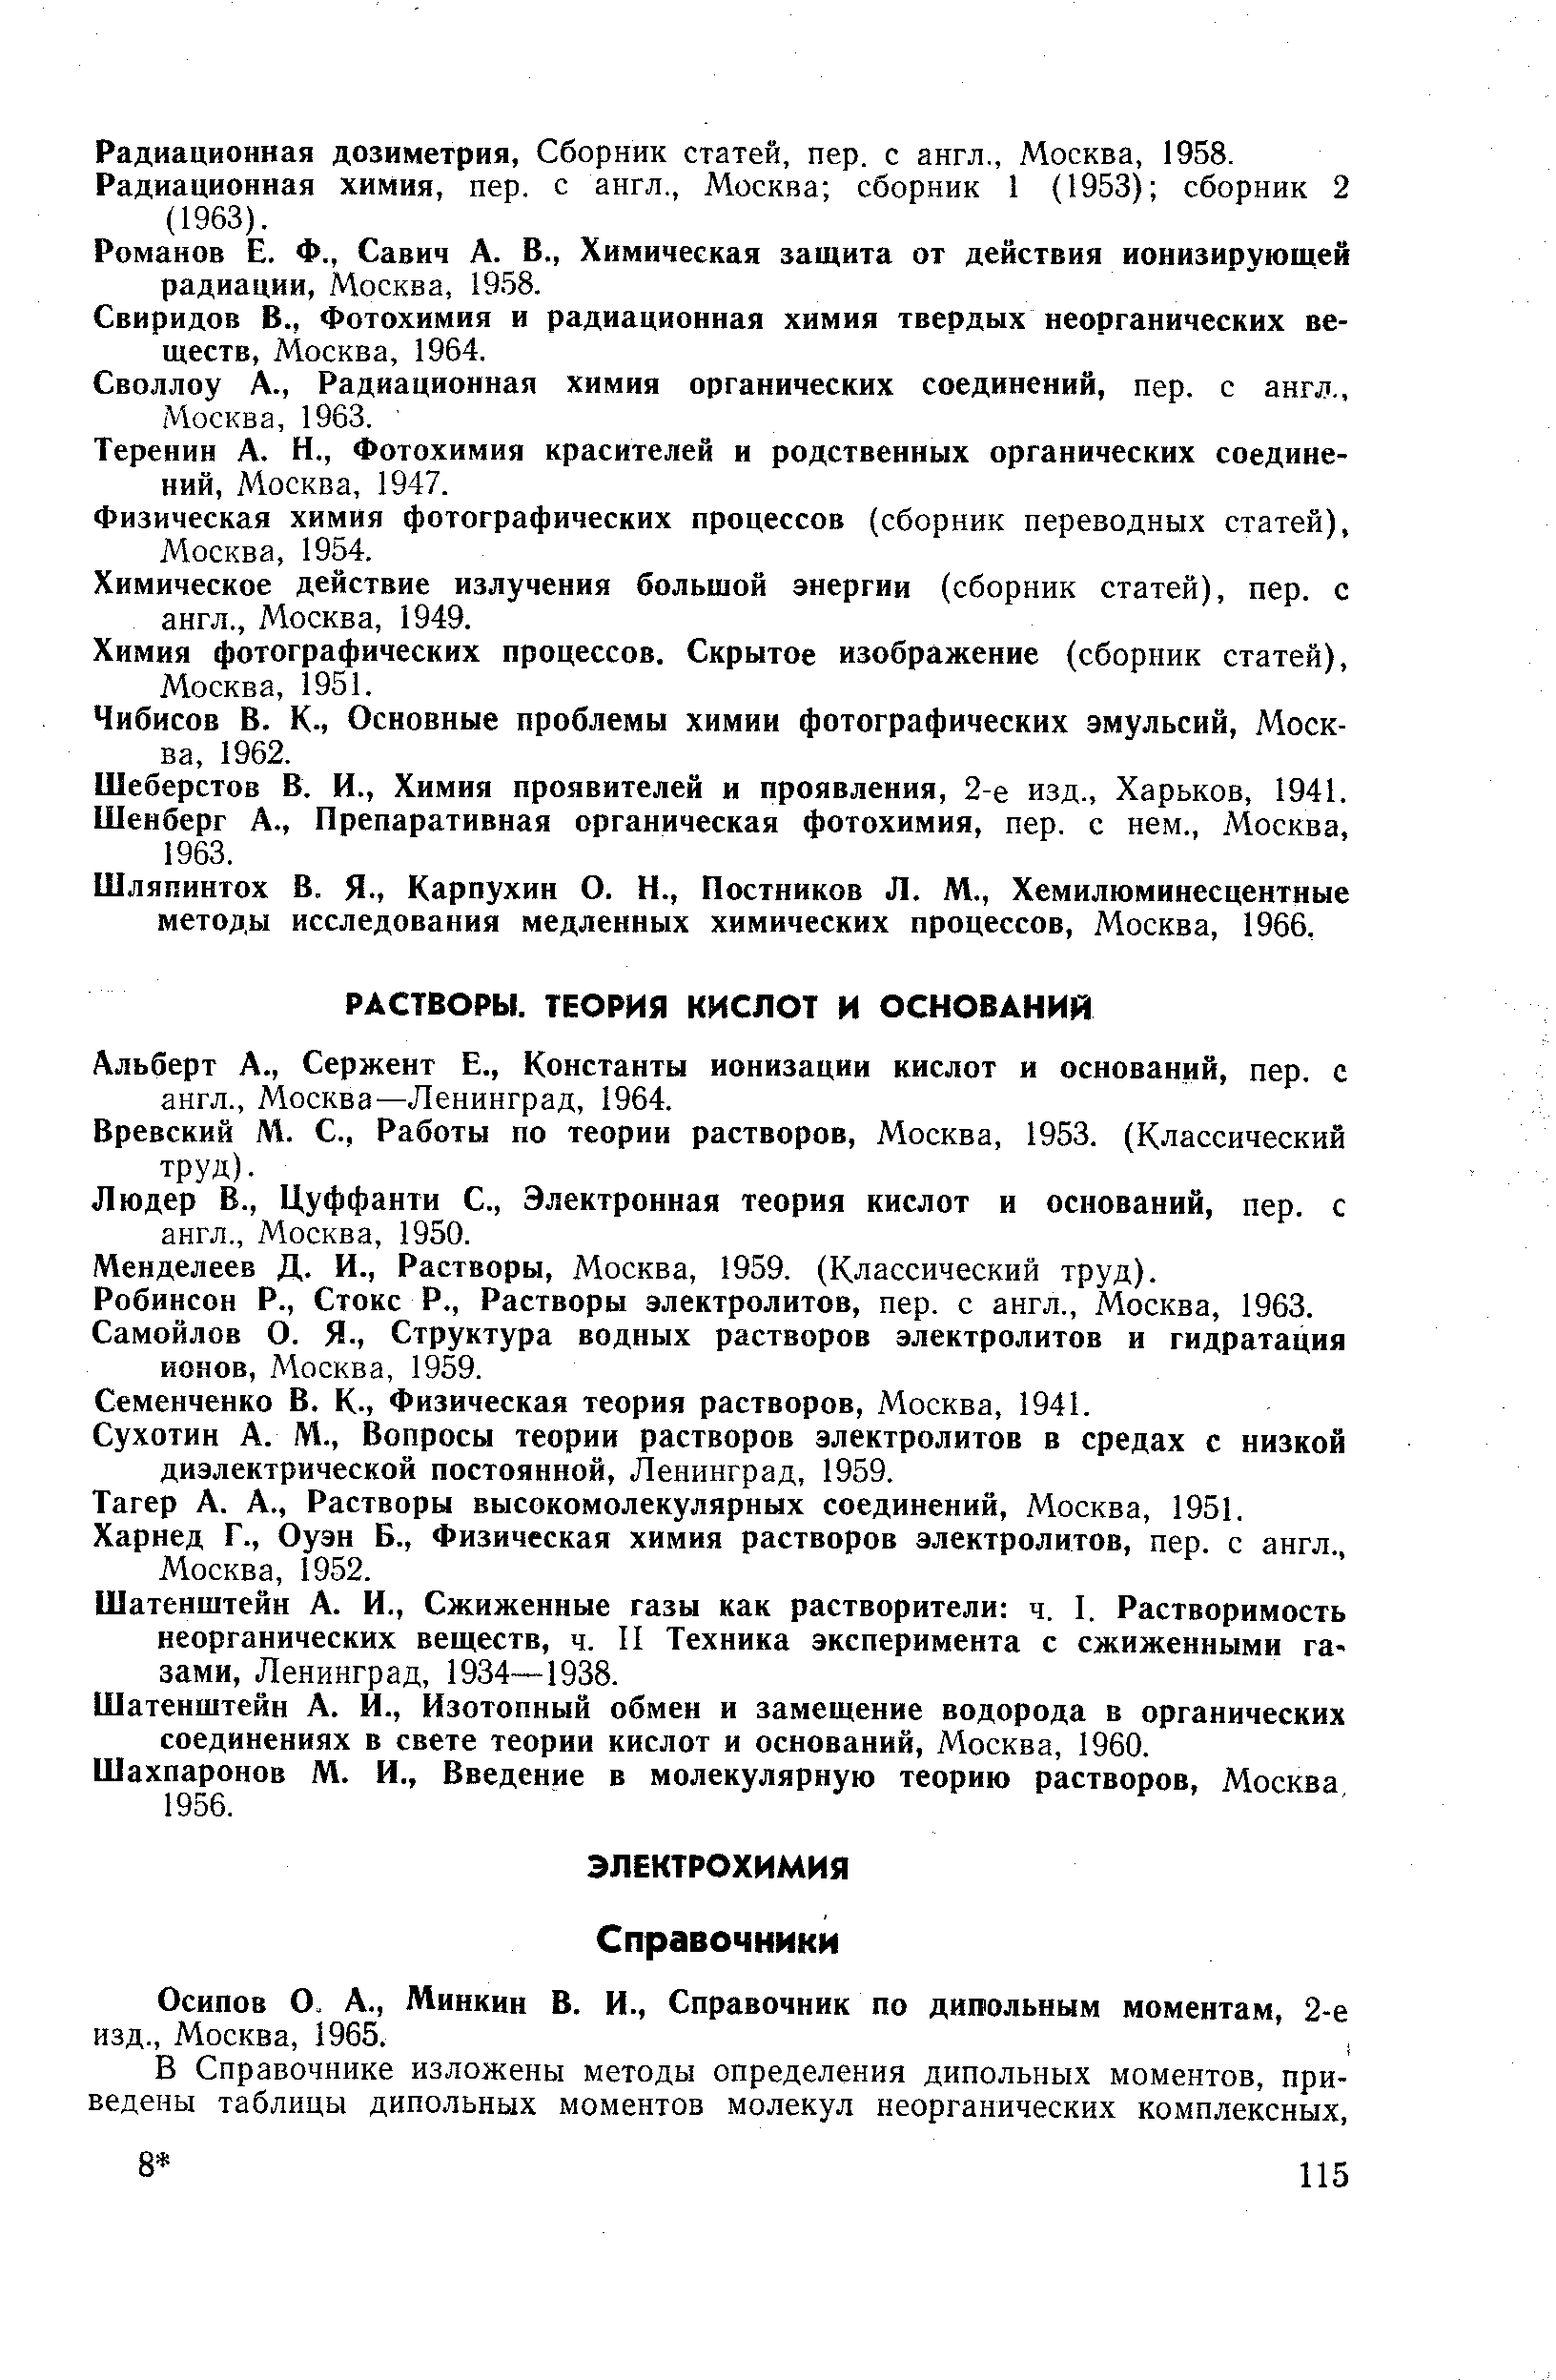 Вревский М. С., Работы по теории растворов, Москва, 1953. (Классический труд).